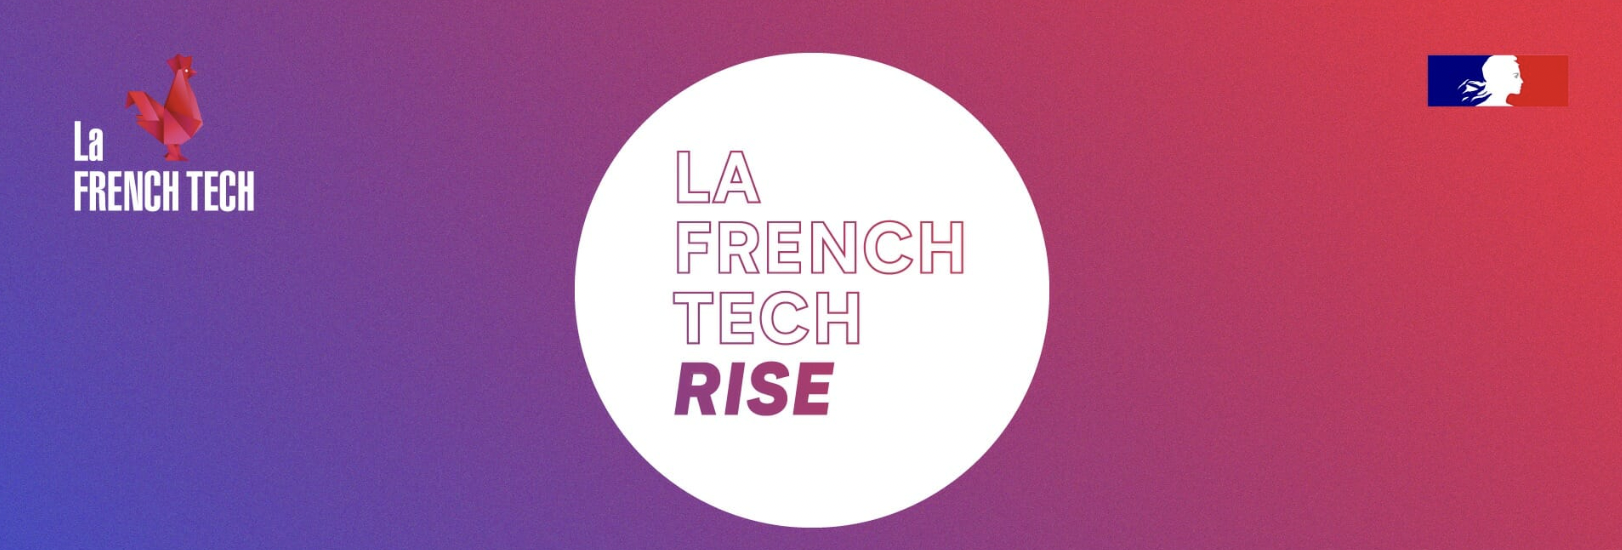 French Tech Rise jusqu’au 26 septembre